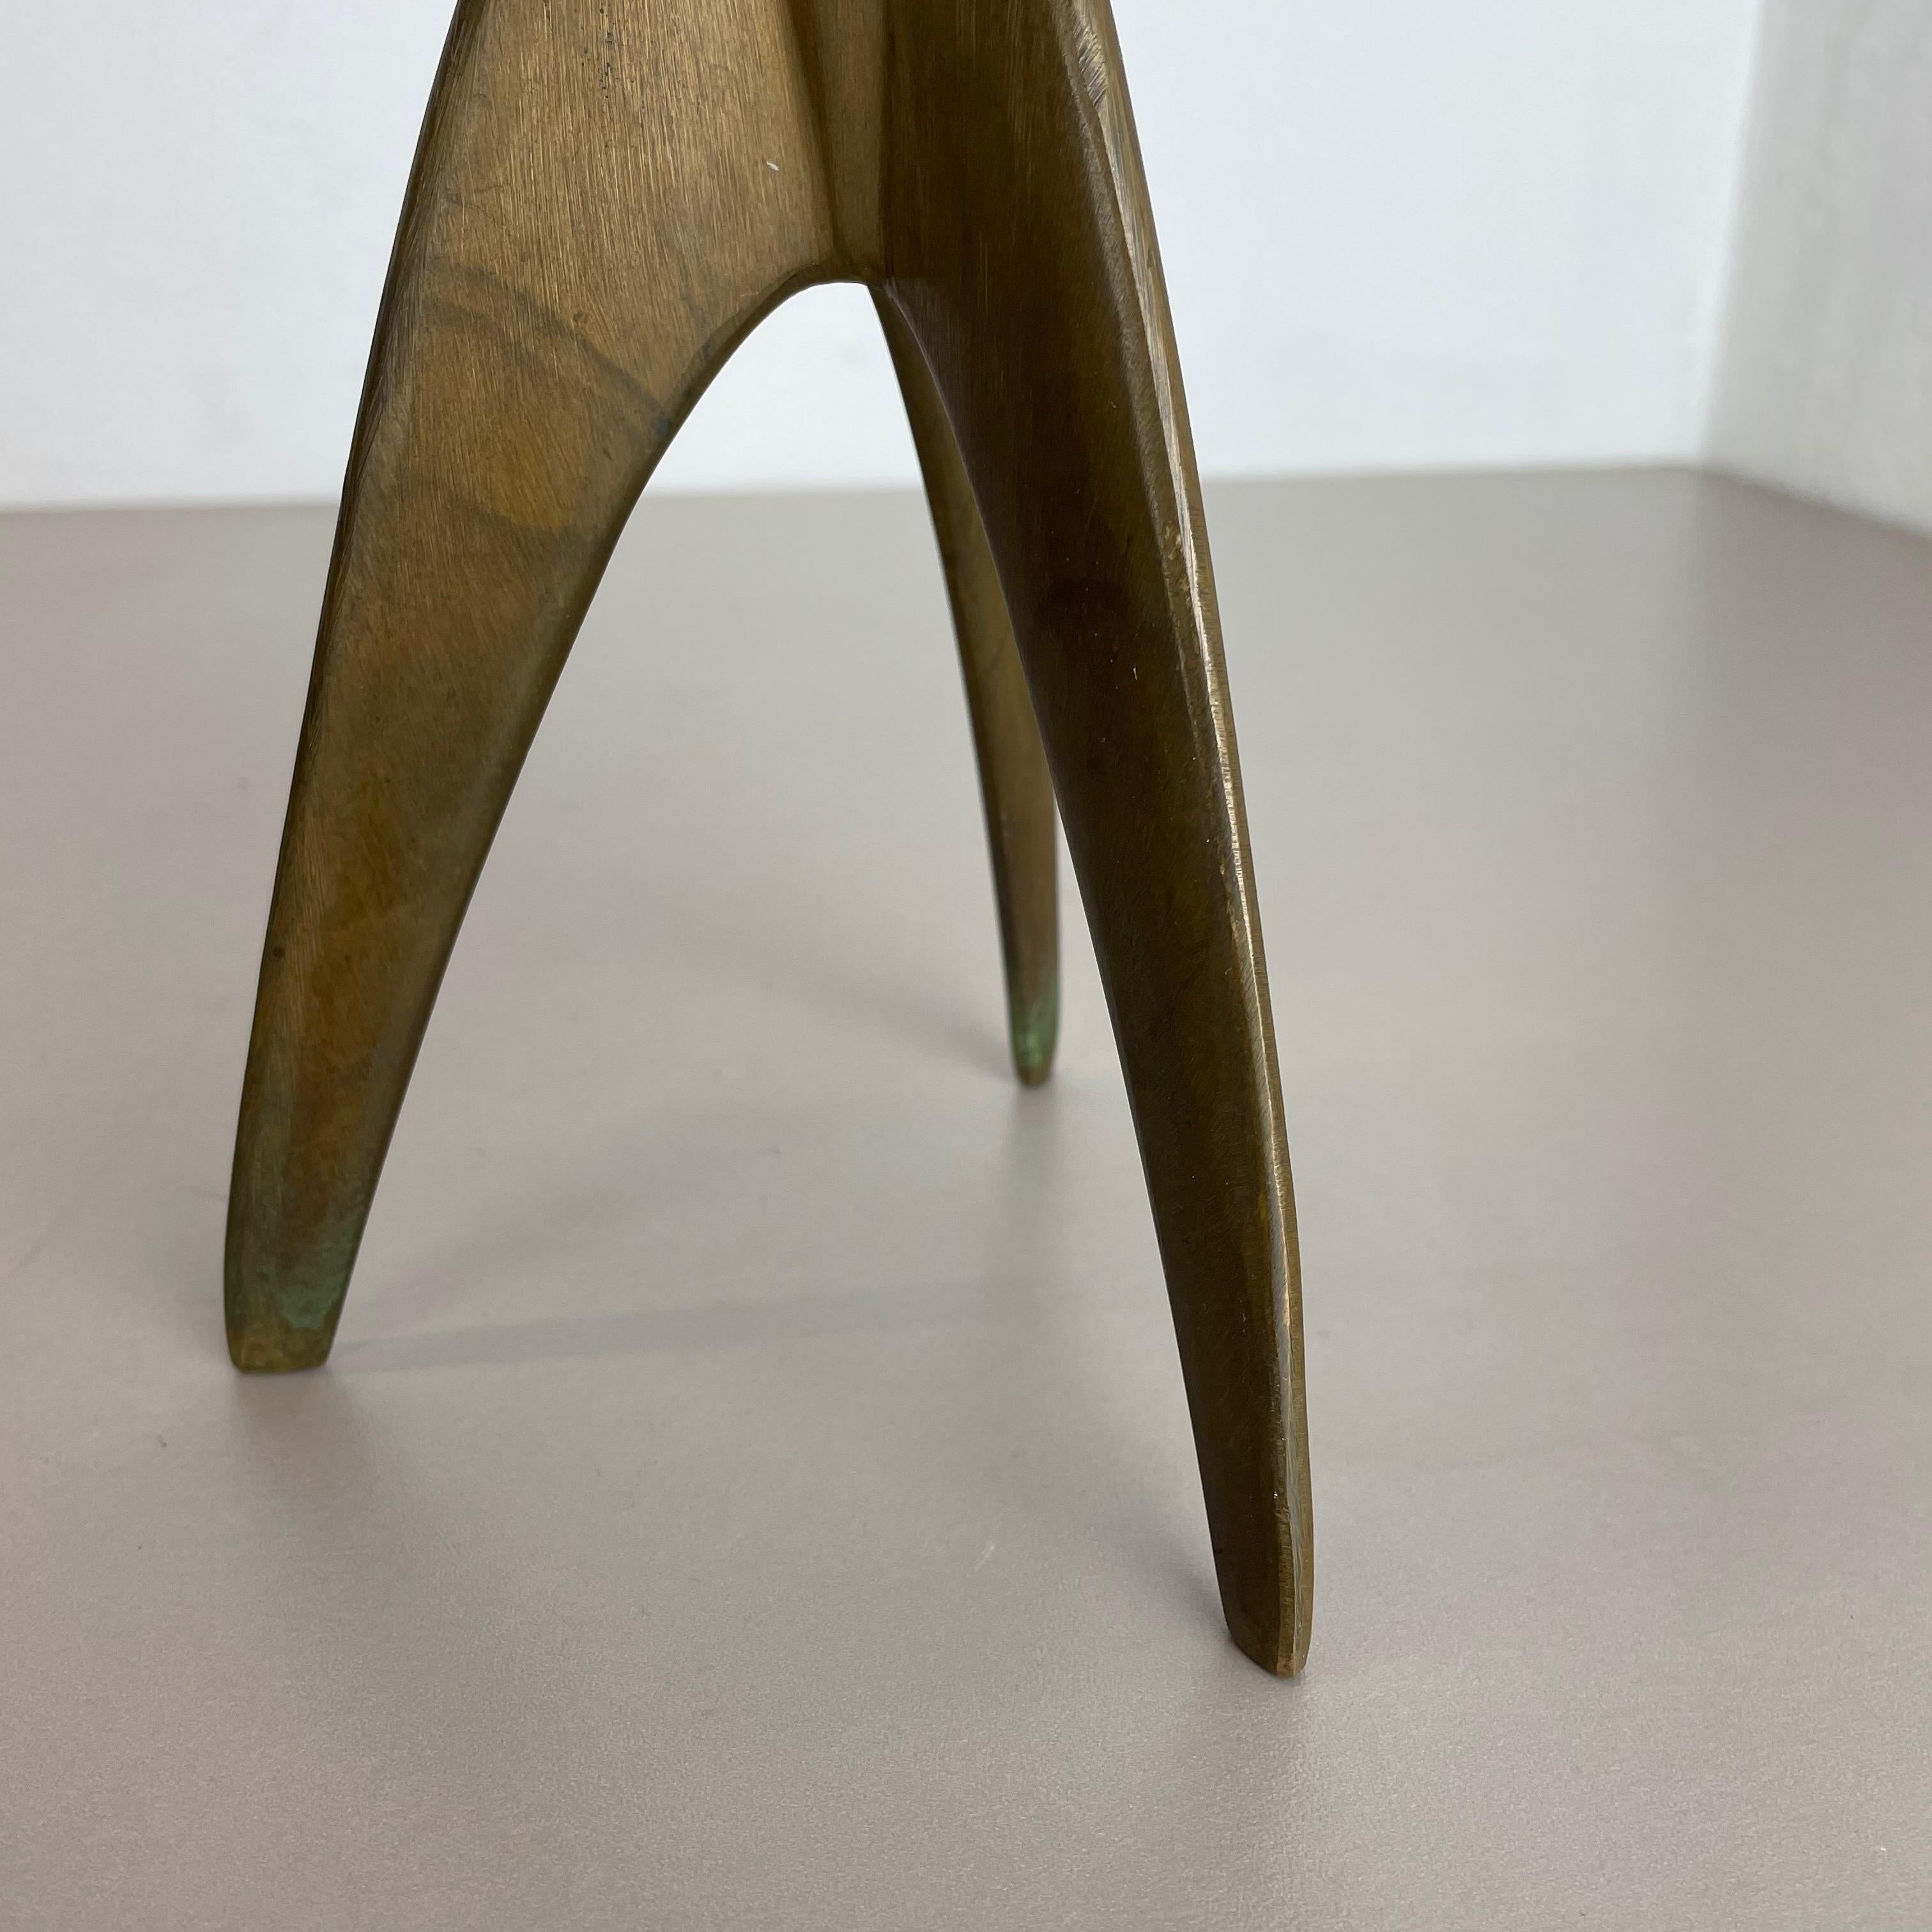 Modernist Sculptural Brutalist Tripod Brass Candleholder, Germany, 1970s For Sale 1